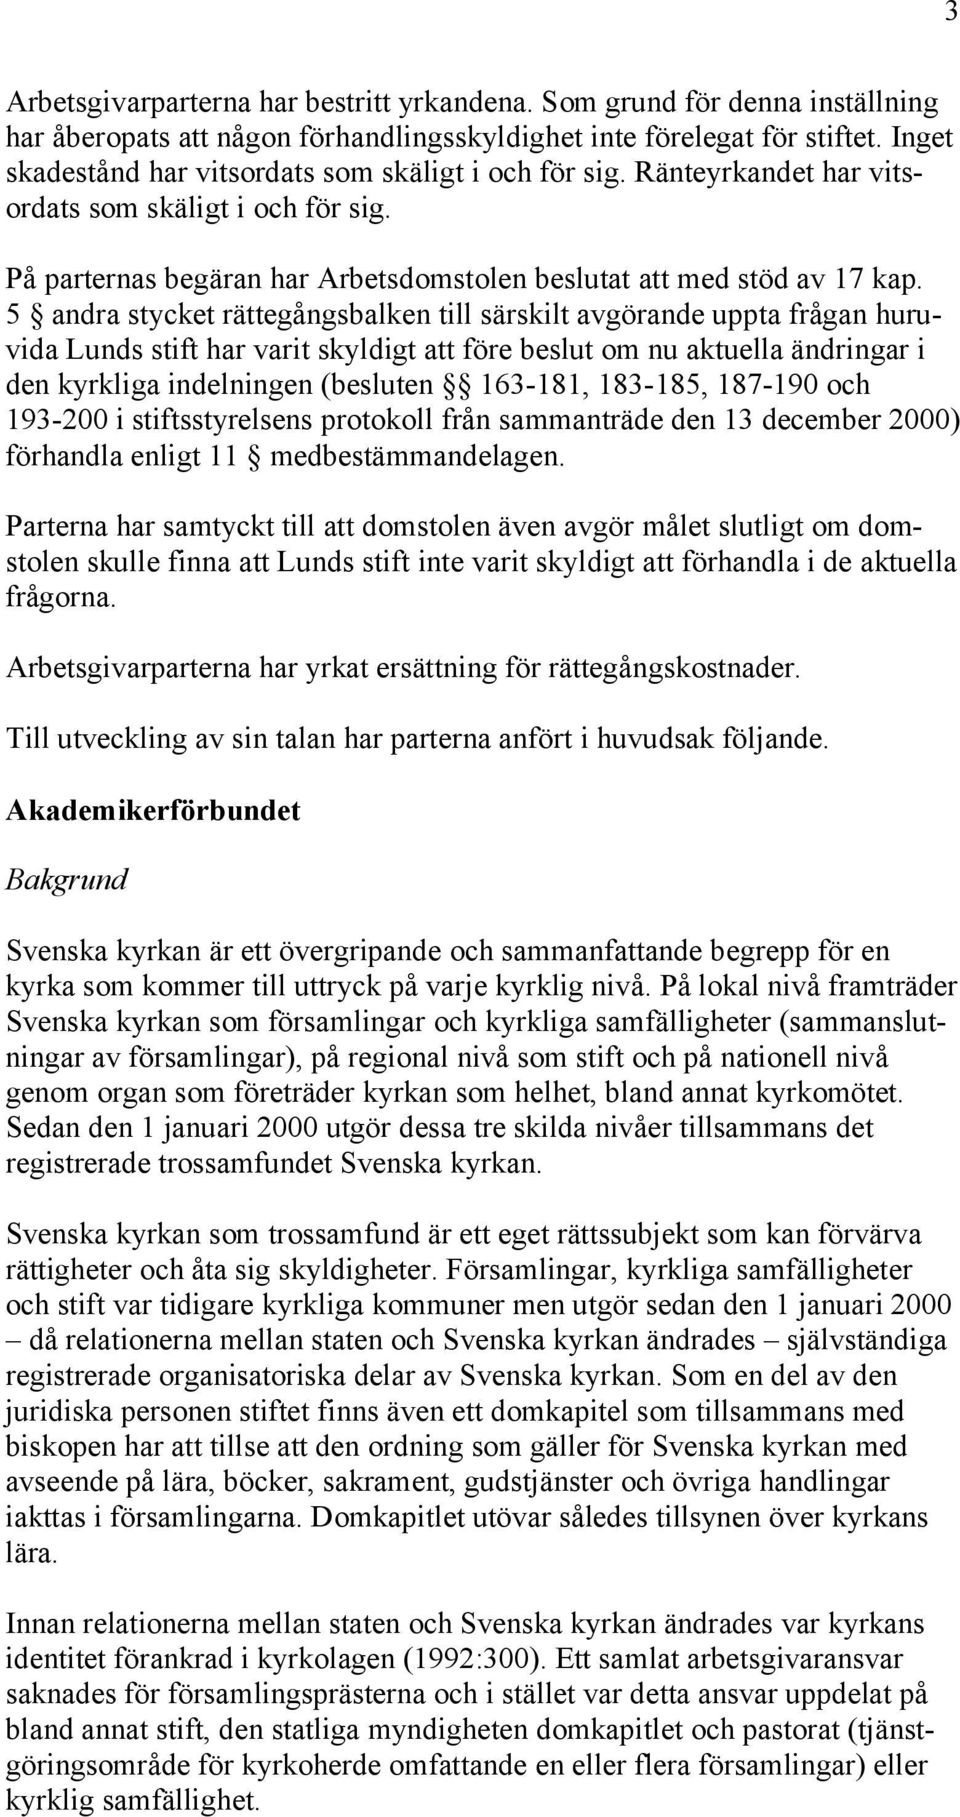 5 andra stycket rättegångsbalken till särskilt avgörande uppta frågan huruvida Lunds stift har varit skyldigt att före beslut om nu aktuella ändringar i den kyrkliga indelningen (besluten 163-181,